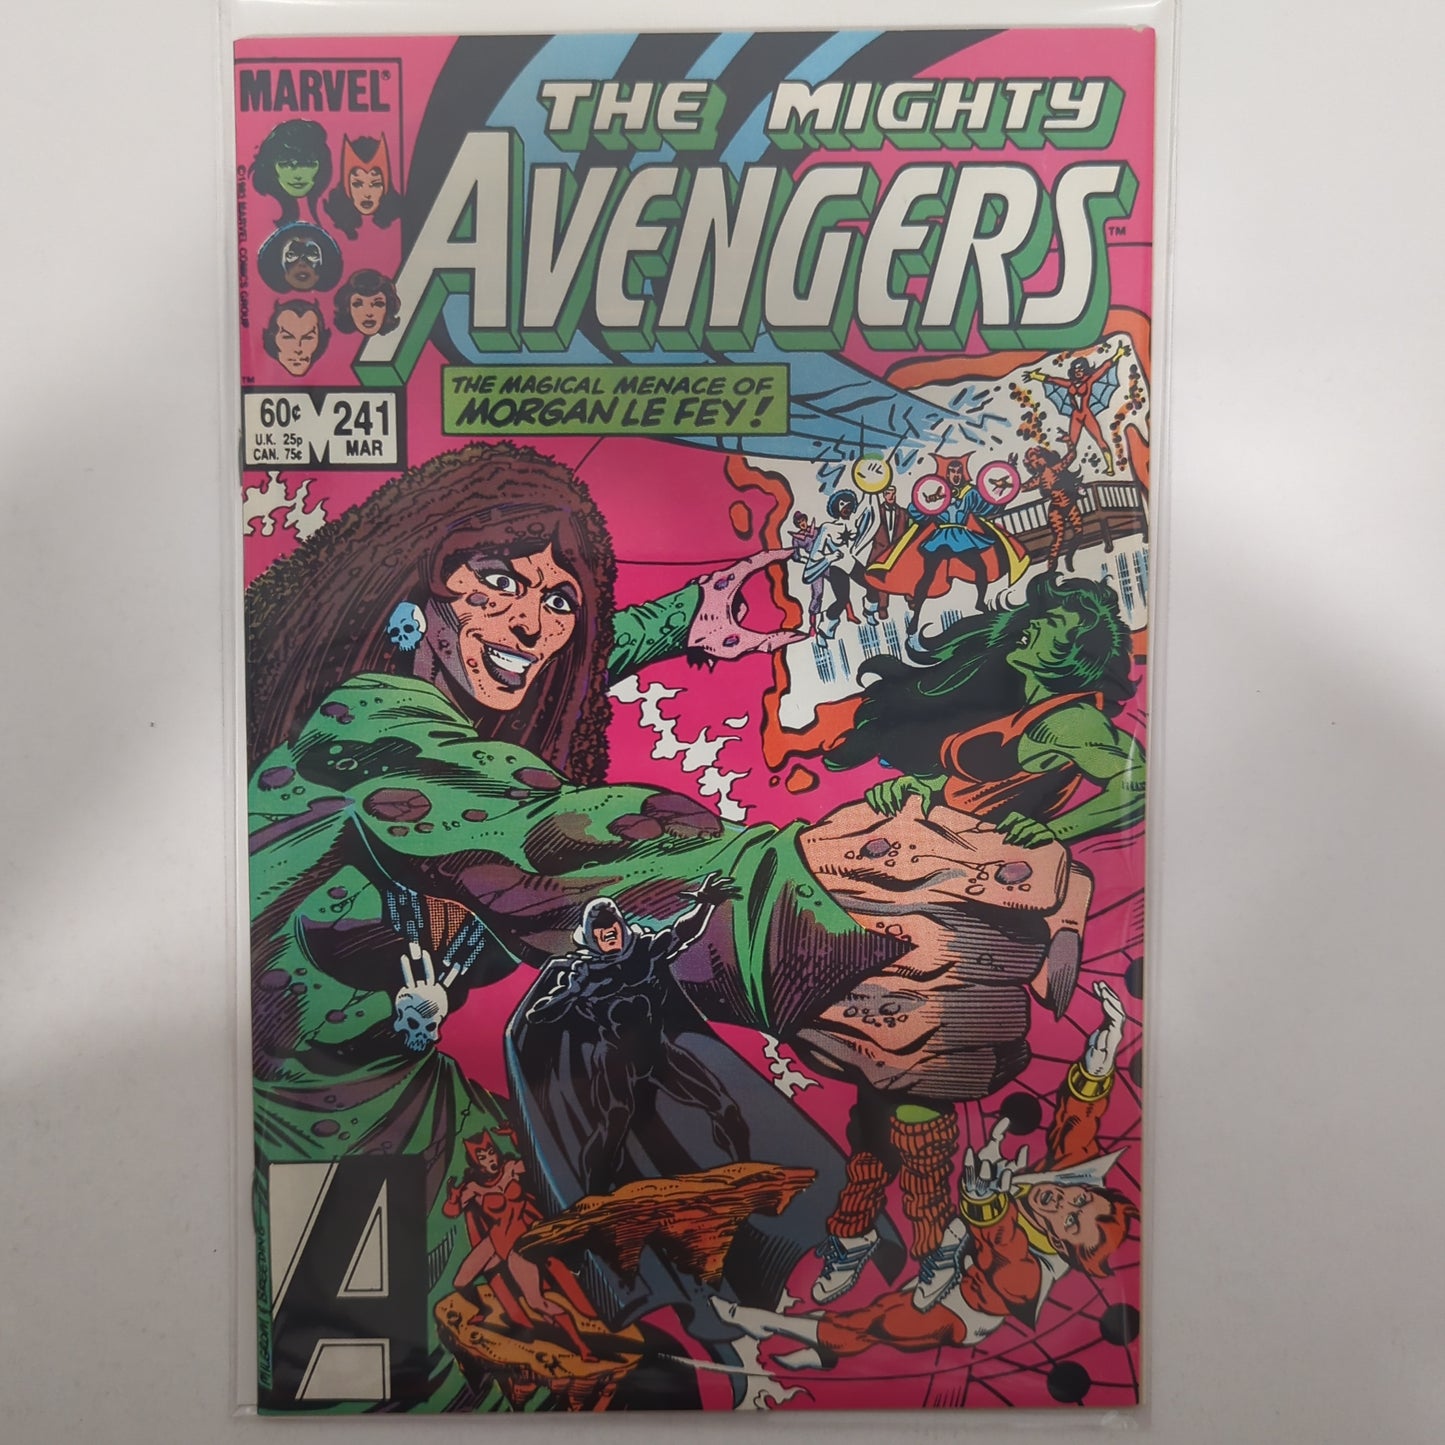 Avengers #241